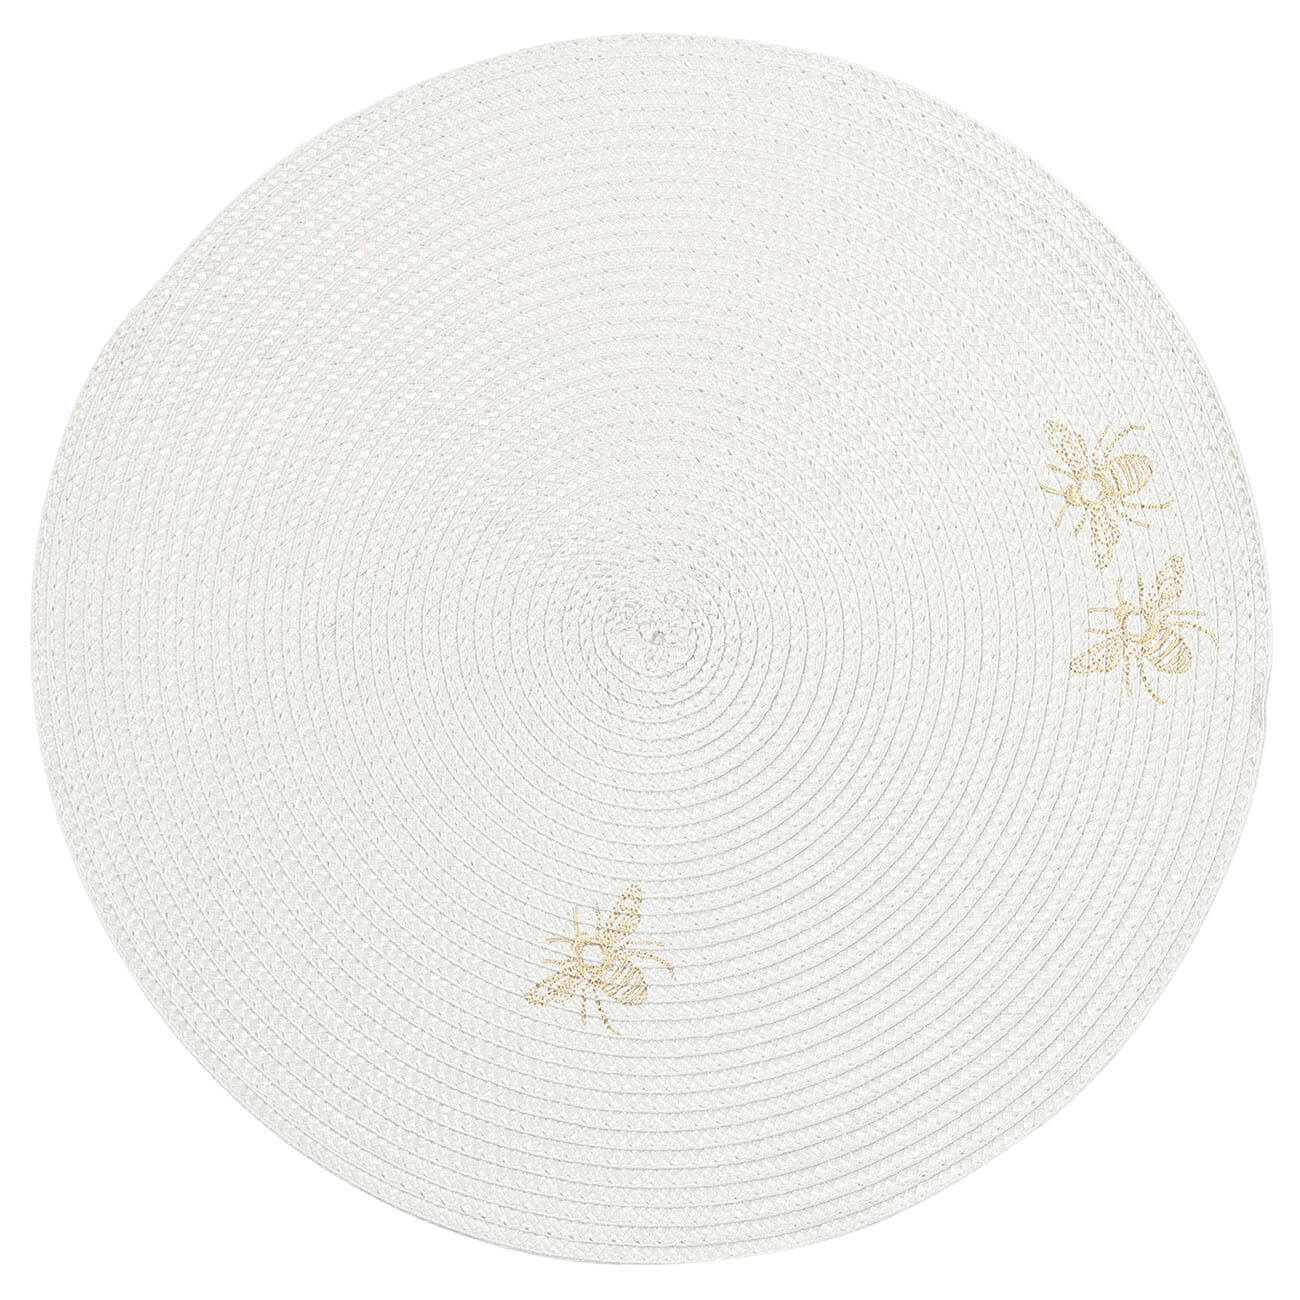 Салфетка под приборы, 38 см, полипропилен/ПЭТ, круглая, светло-серая, Пчелы, Circle embroidery салфетка противоожоговая эверс лайф сп 13 18cм